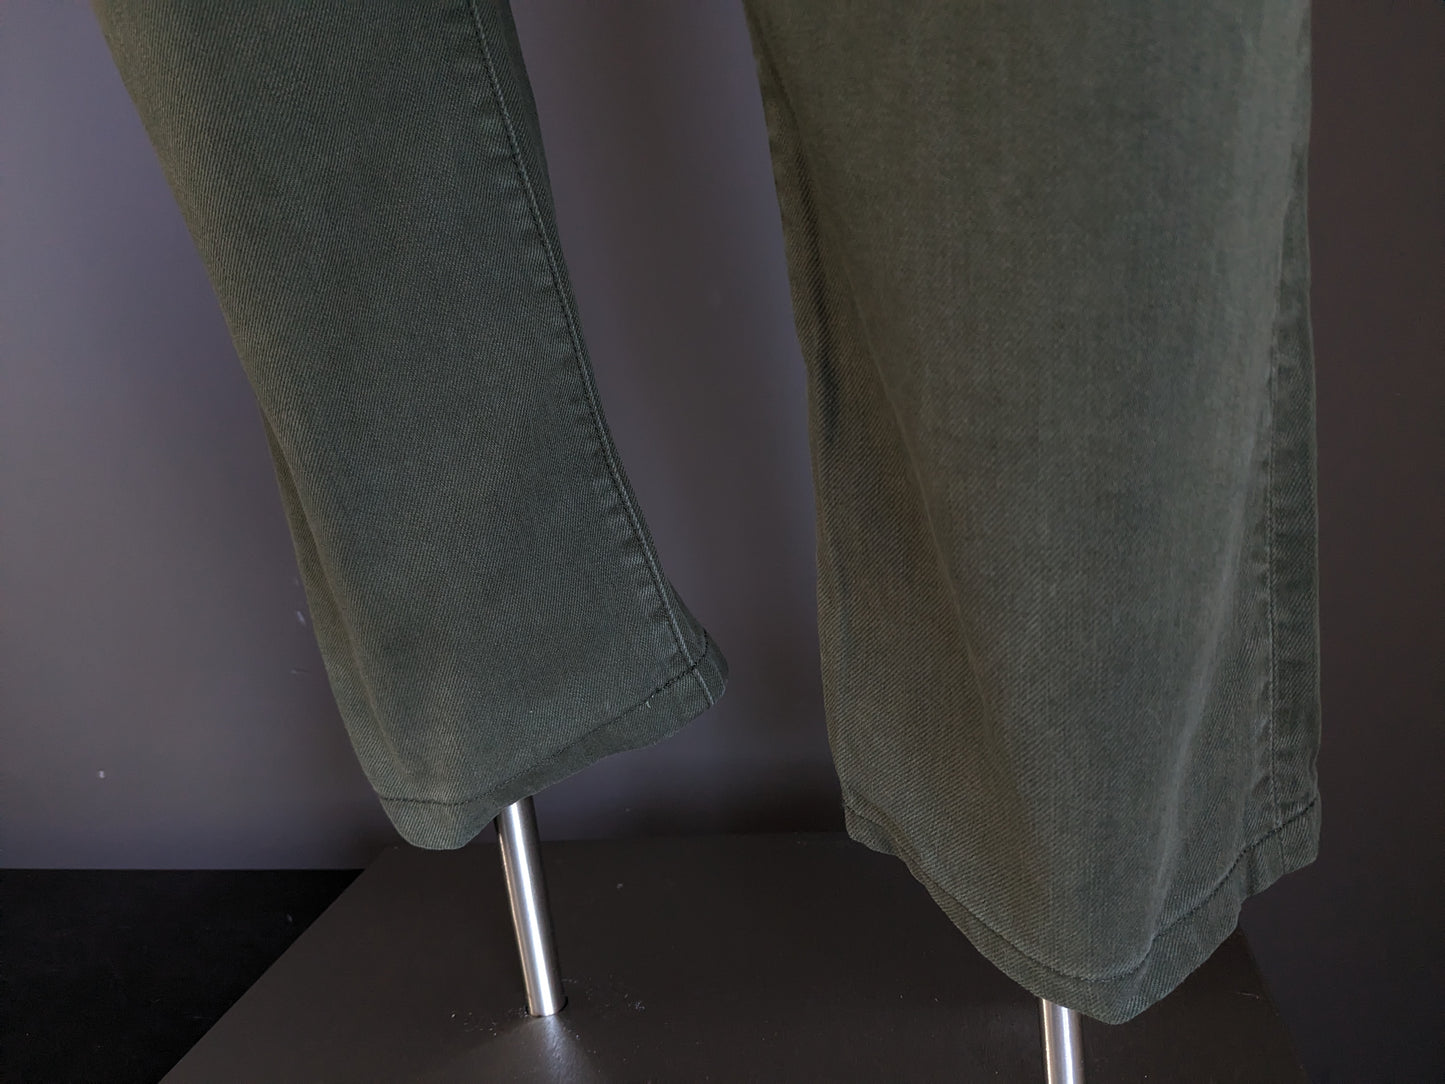 Scotch & Soda jeans. Groen gekleurd. Maat W34 - L34. Type Ralston.